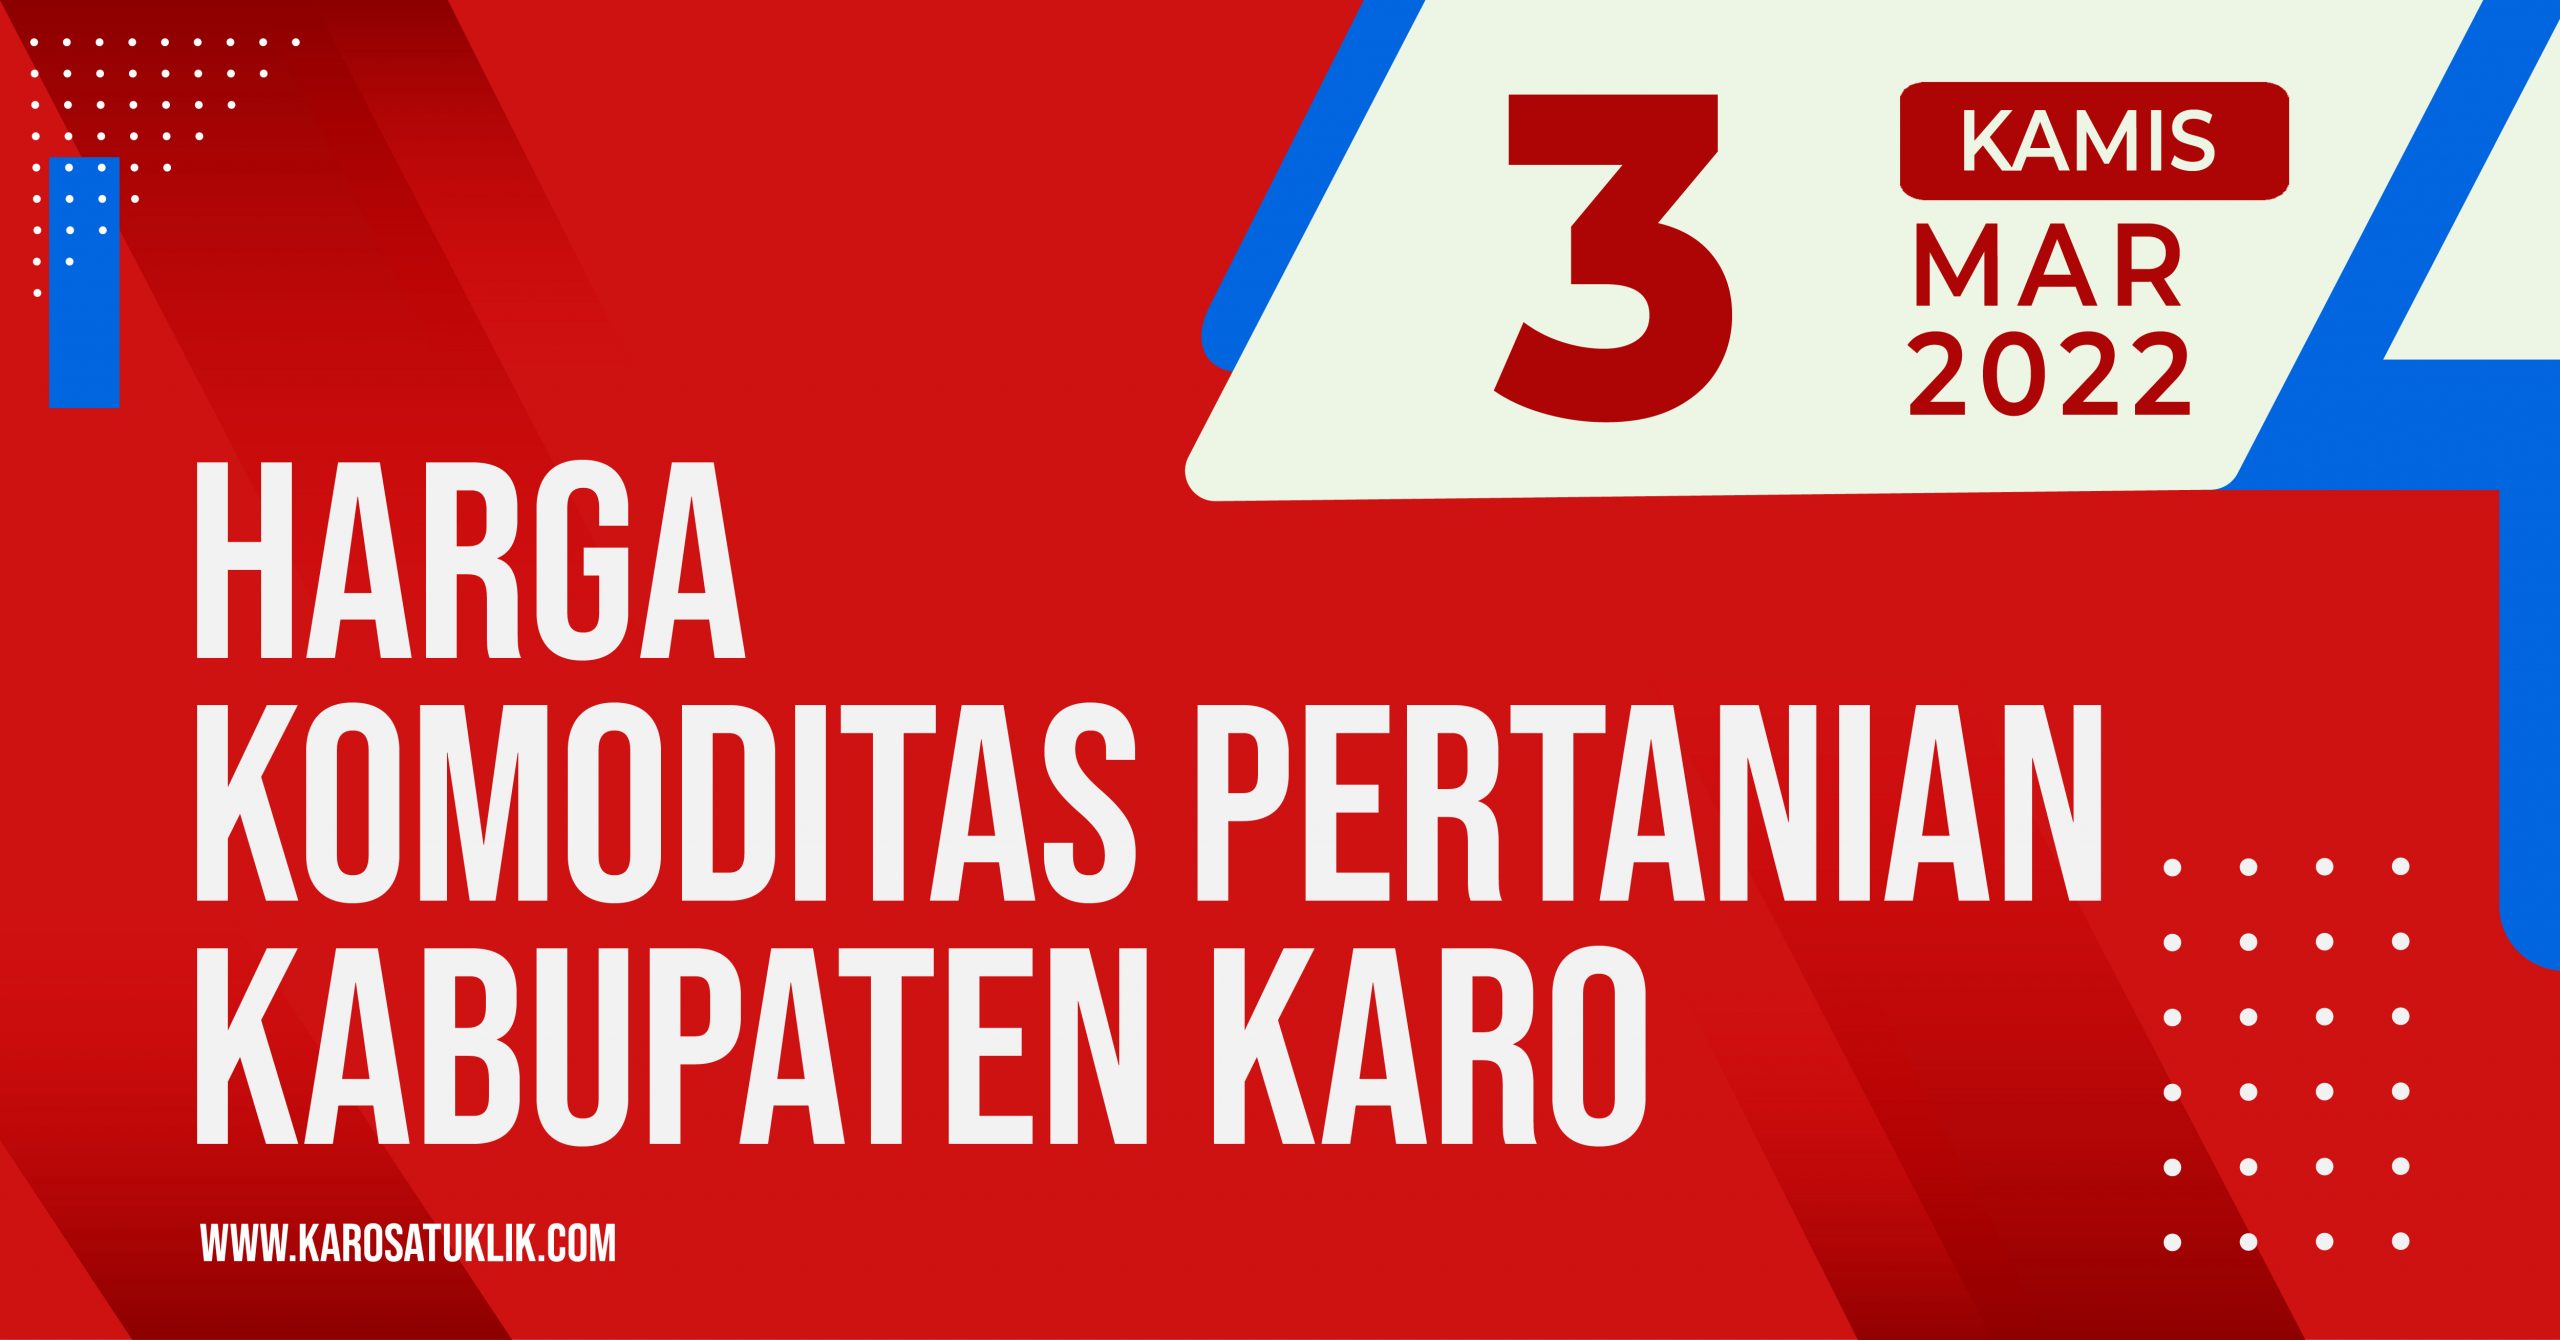 Daftar Harga Komoditas Pertanian Kabupaten Karo, 3 Maret 2022